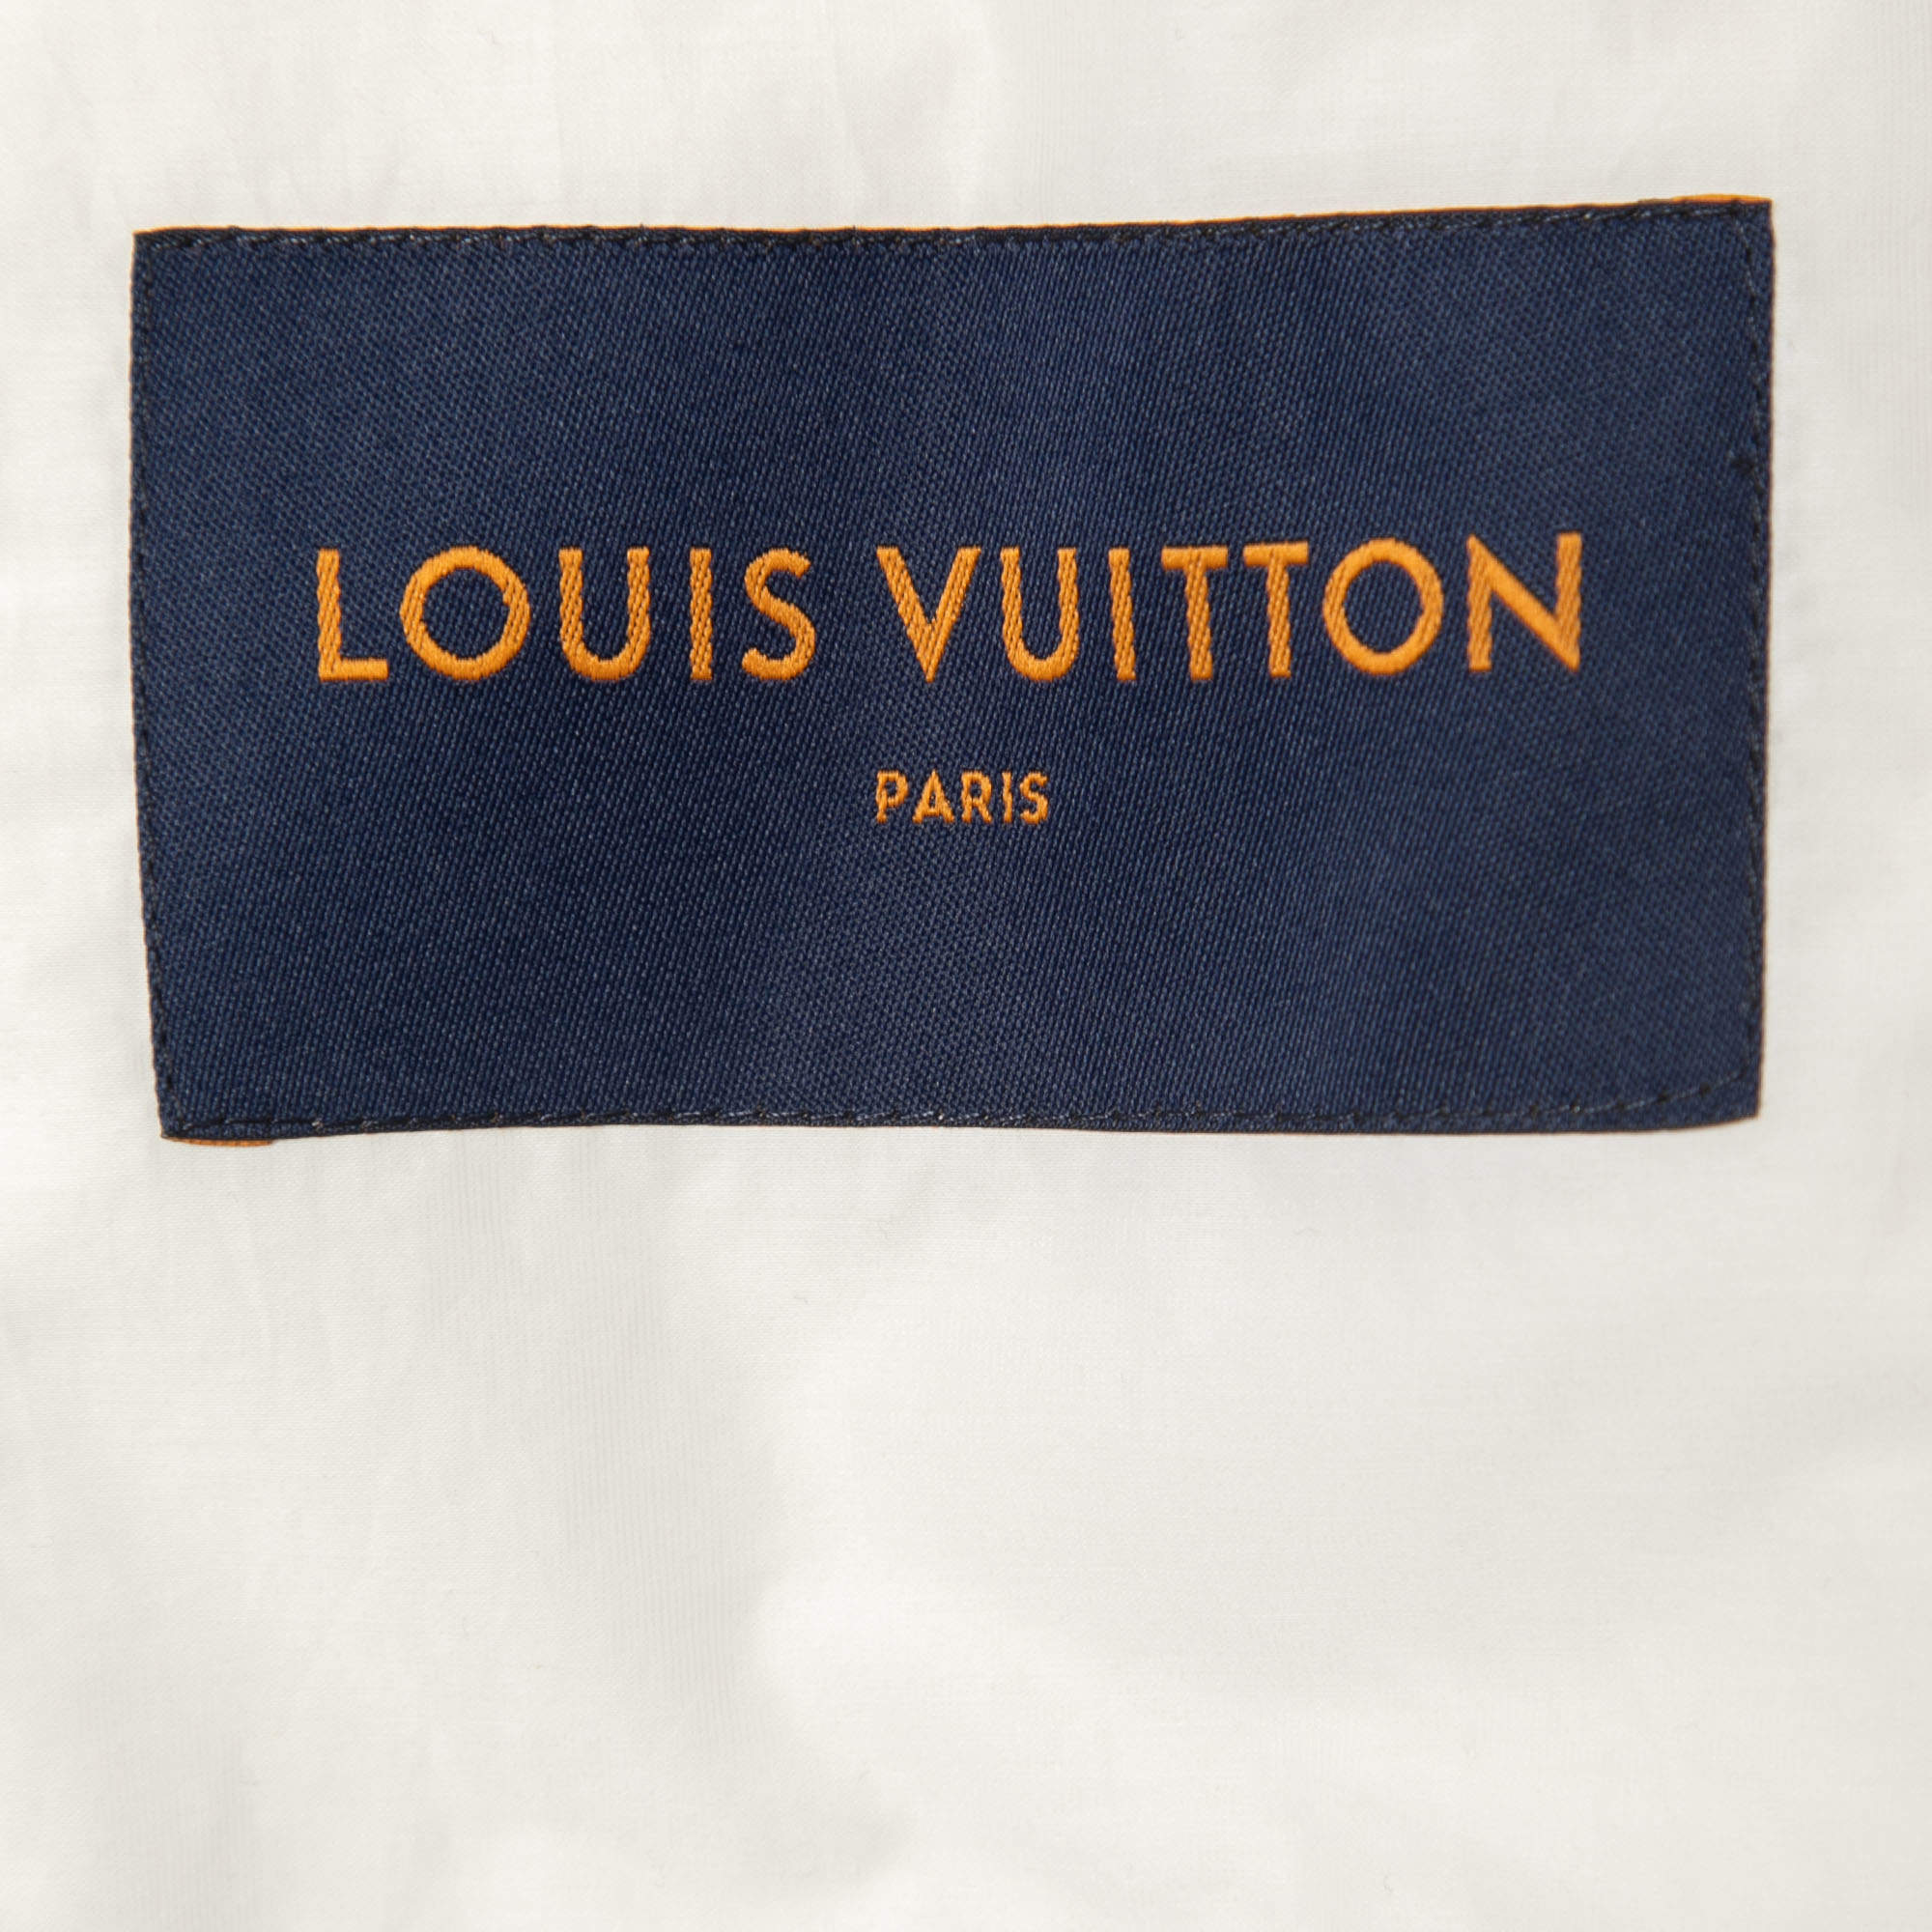 Louis Vuitton 2018 Mink Fur Landscape Coat - Outerwear, Clothing